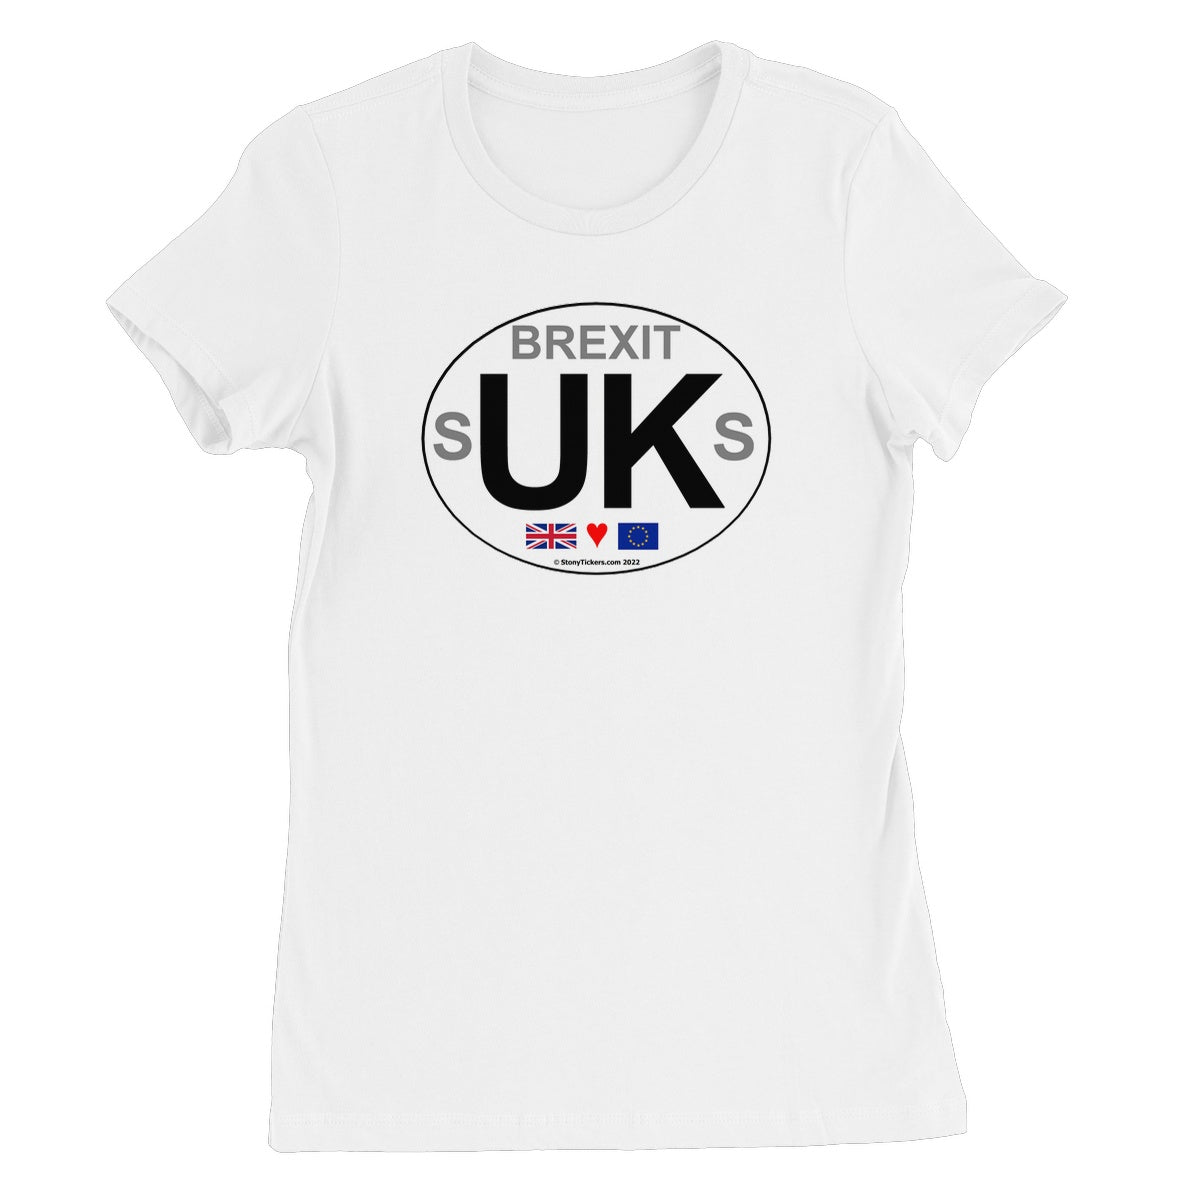 Brexit sUKs Women's T-Shirt